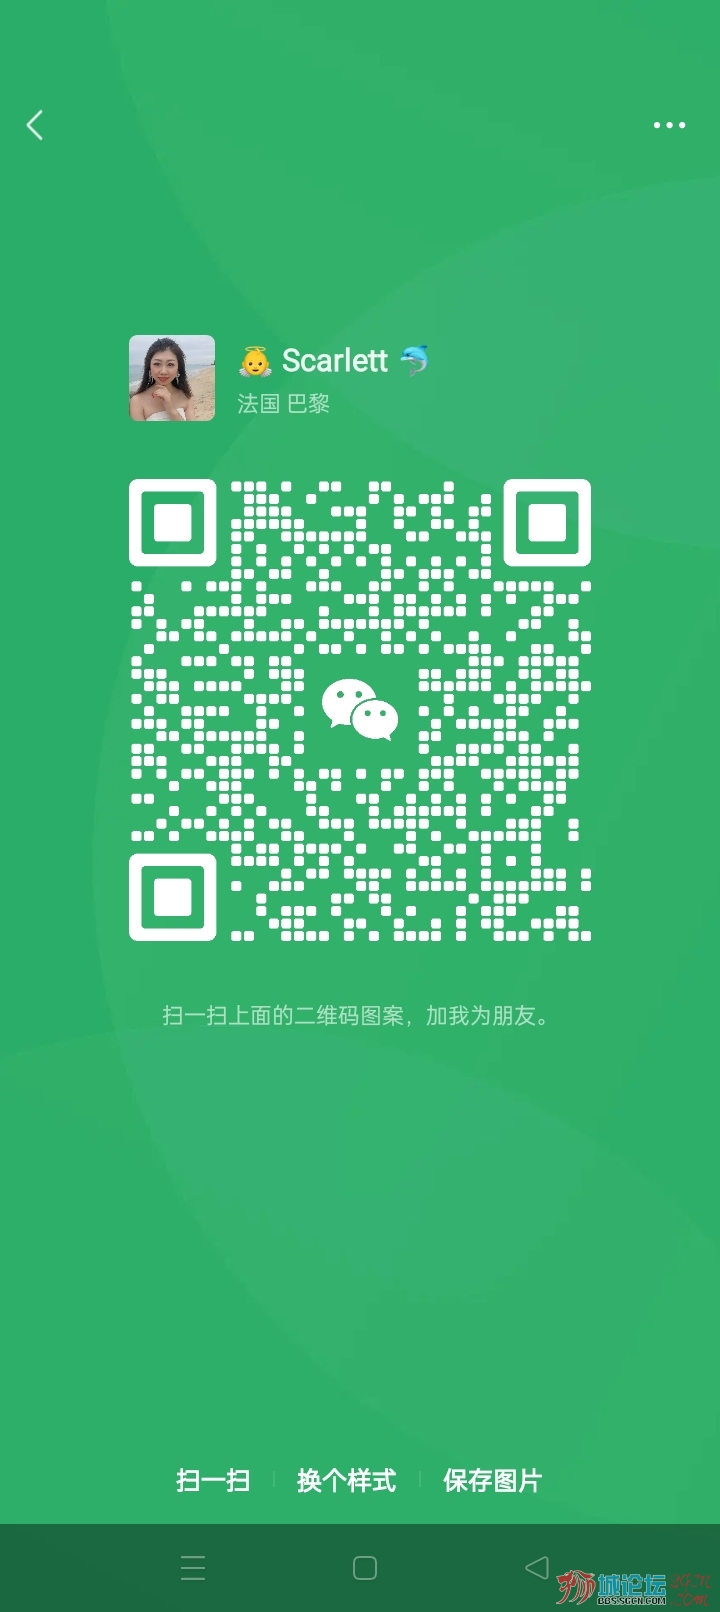 WeChat Image_20230320112649.jpg